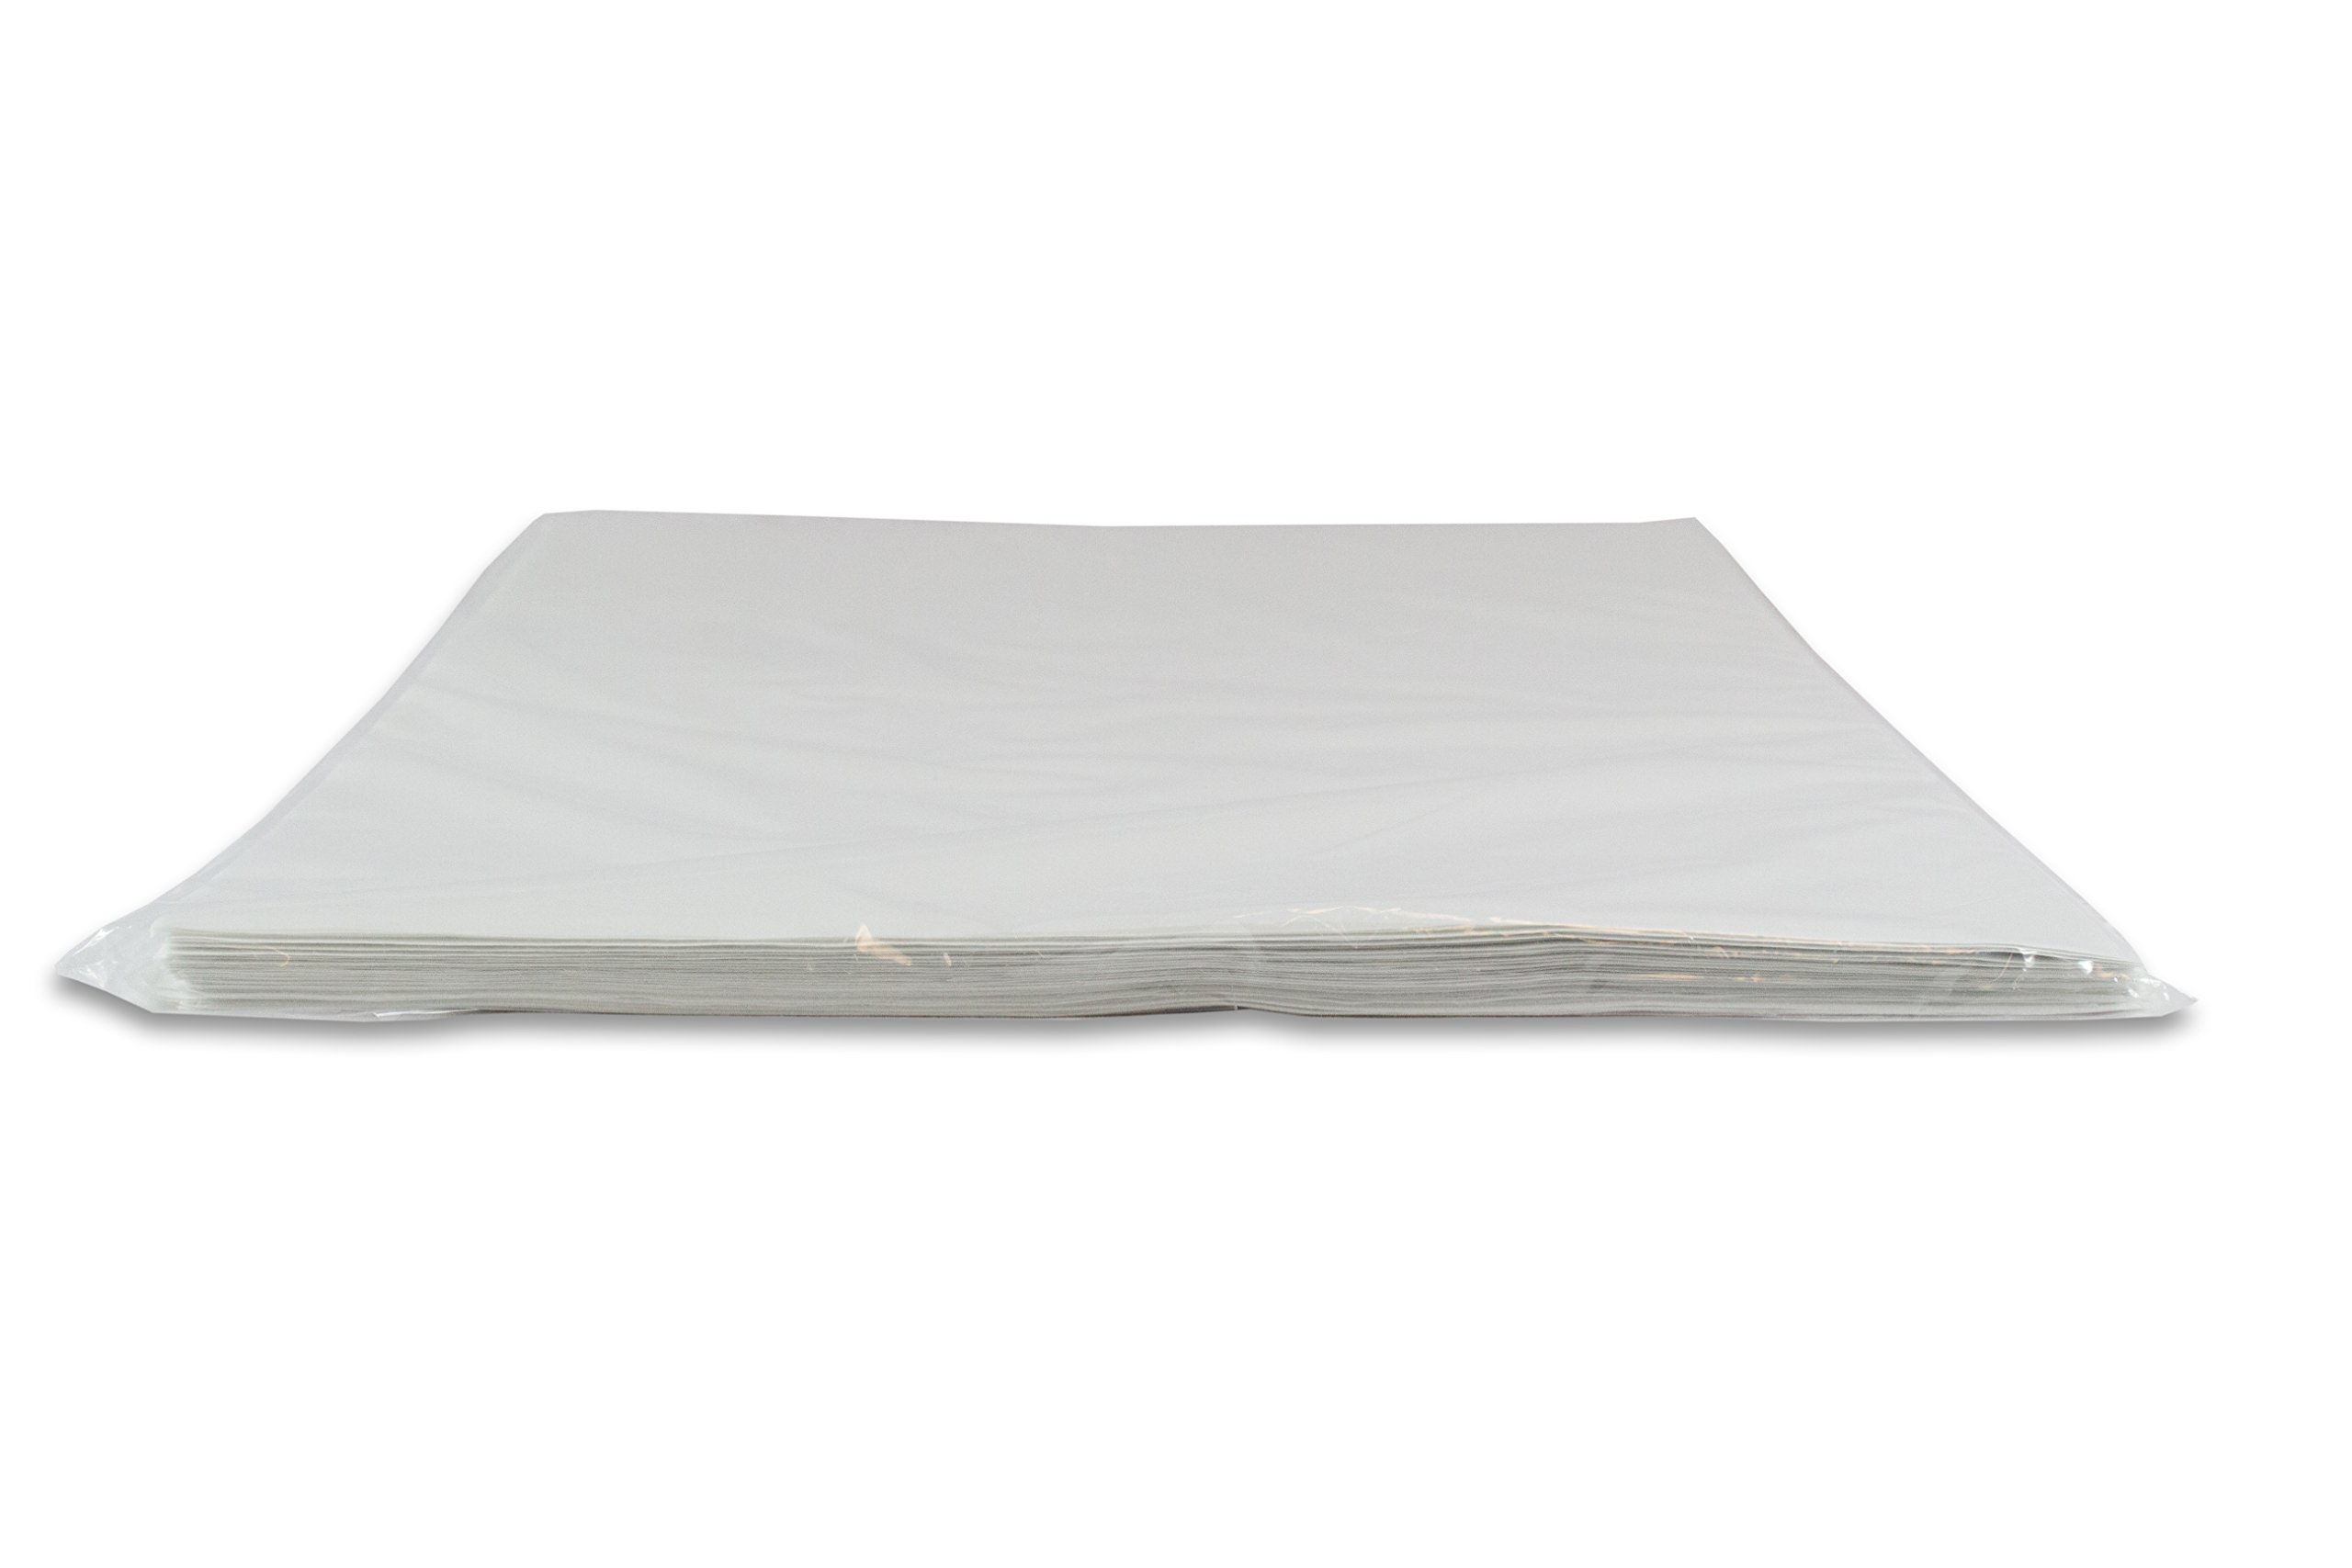 2dayShip Premium Quilon Parchmet Paper Baking Sheets, Pan liner, White, 12 X 16, 300 Count